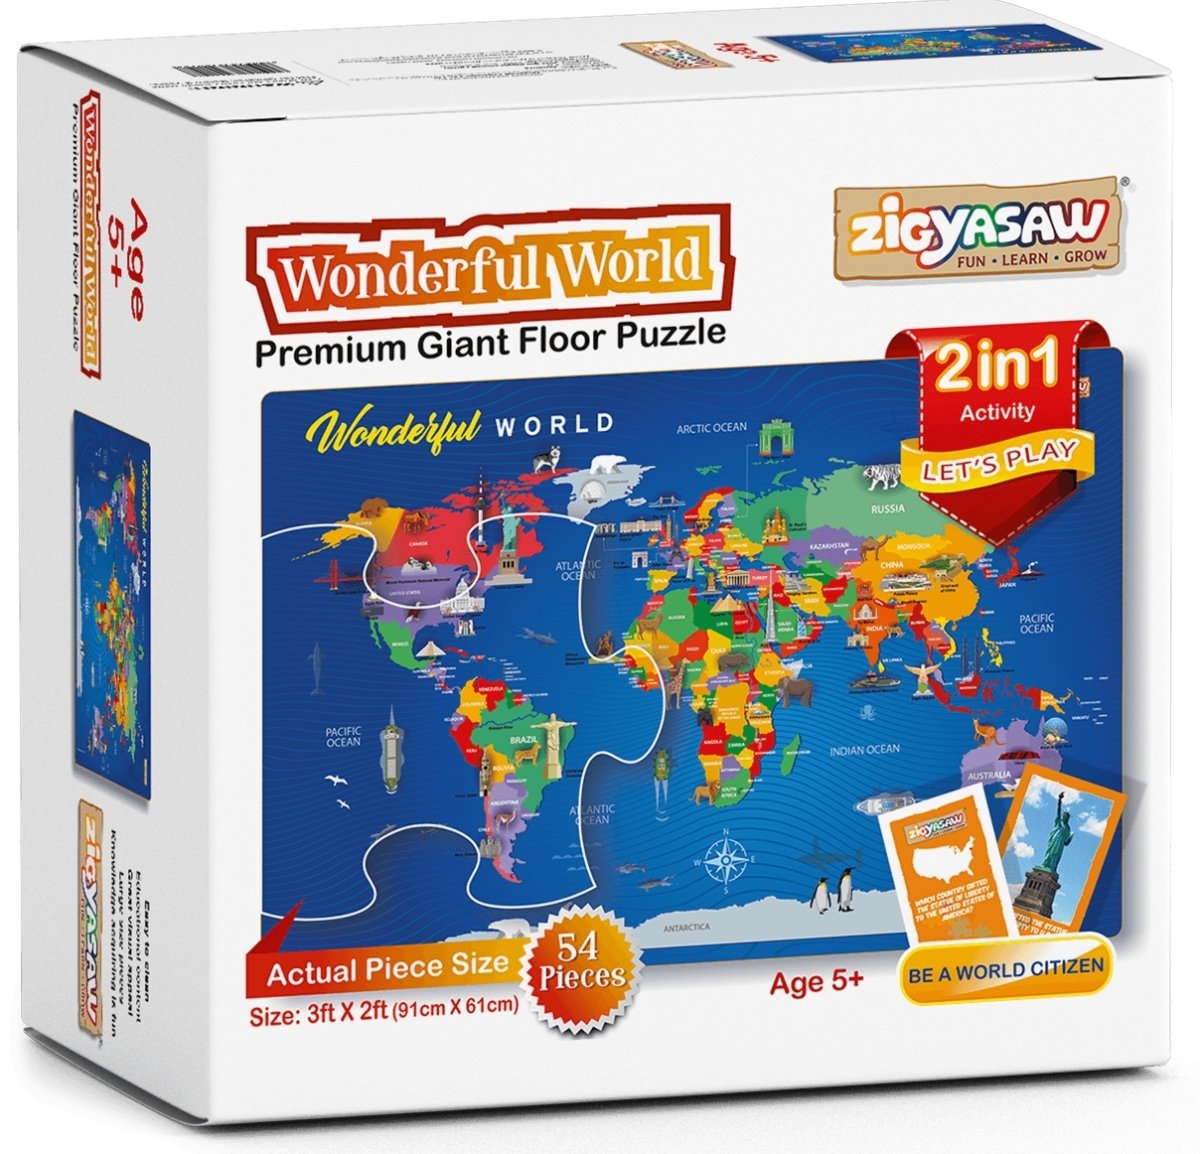 Zigyasaw Wonderful World premium giant floor puzzle game freeshipping - Zigyasaw